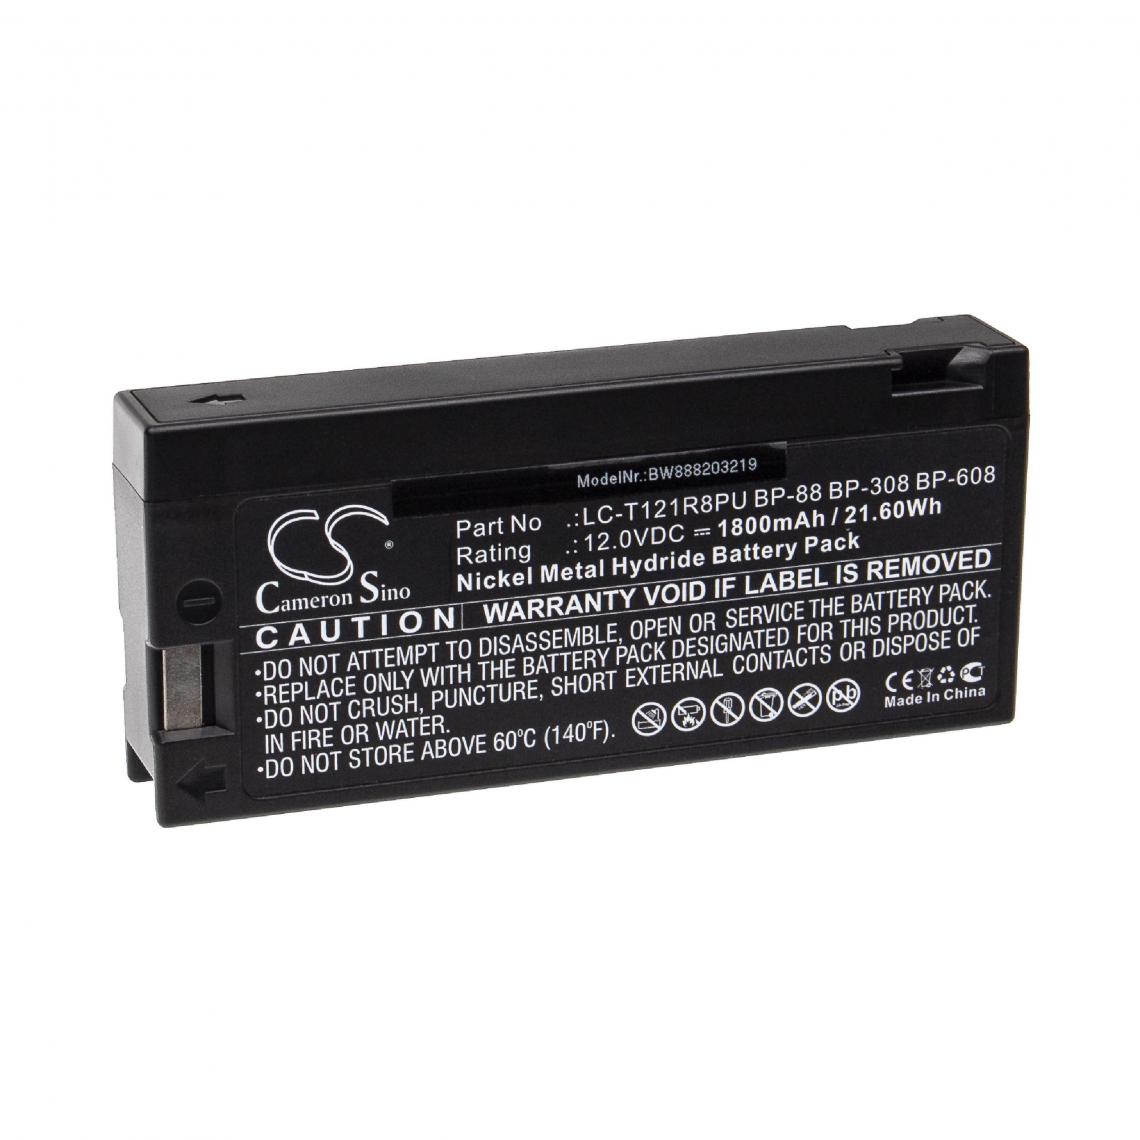 Vhbw - vhbw Batterie compatible avec Colin Medical PRESSMATE ADVANTAGE, ASM500, NXT appareil médical (1800mAh, 12V, NiMH) - Piles spécifiques